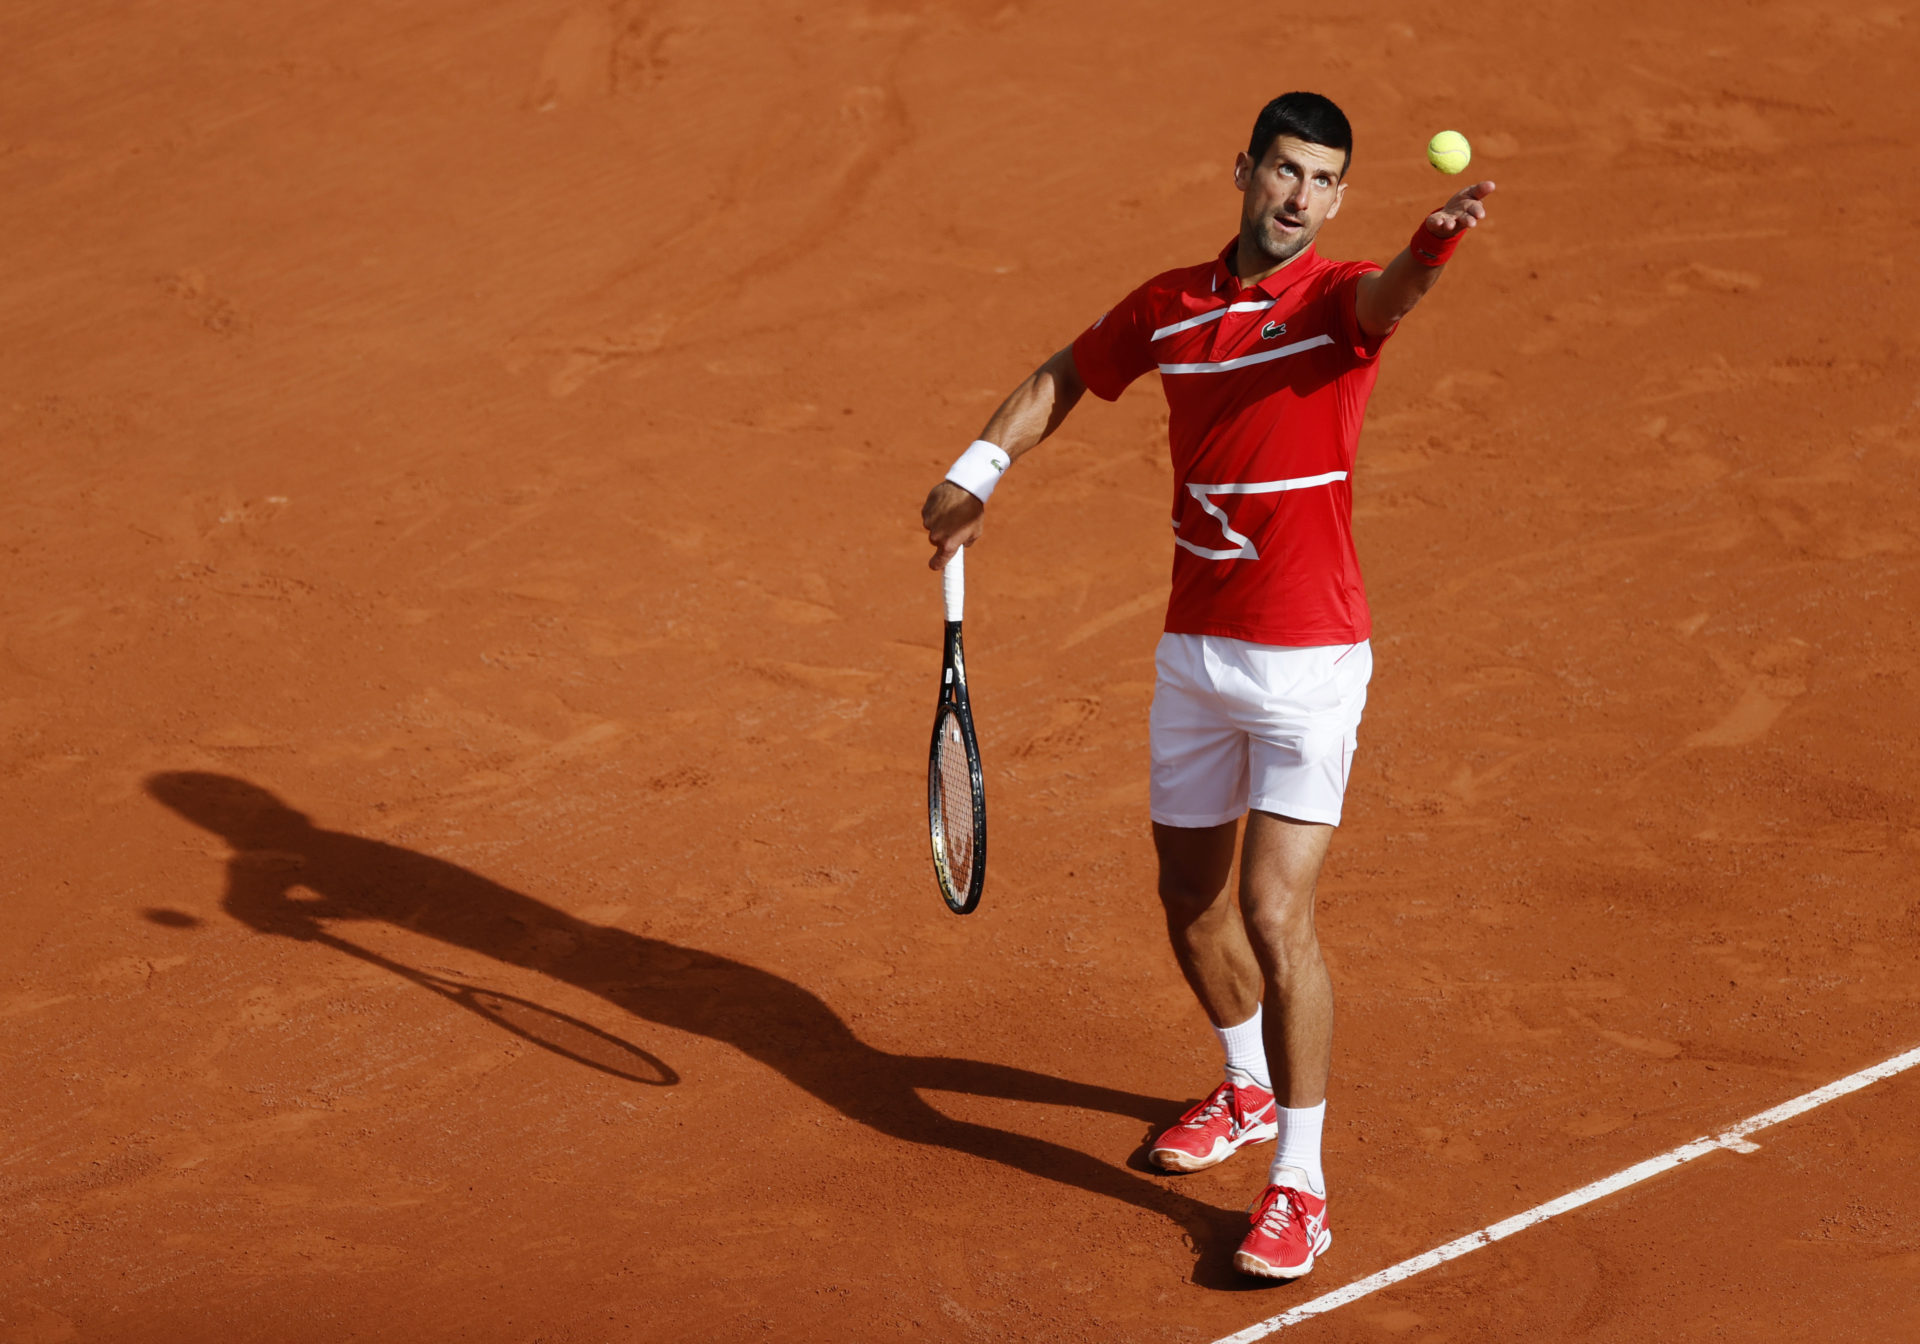 Novak Djokovic Roland Garros 2020 / French Open 2020 Results Novak